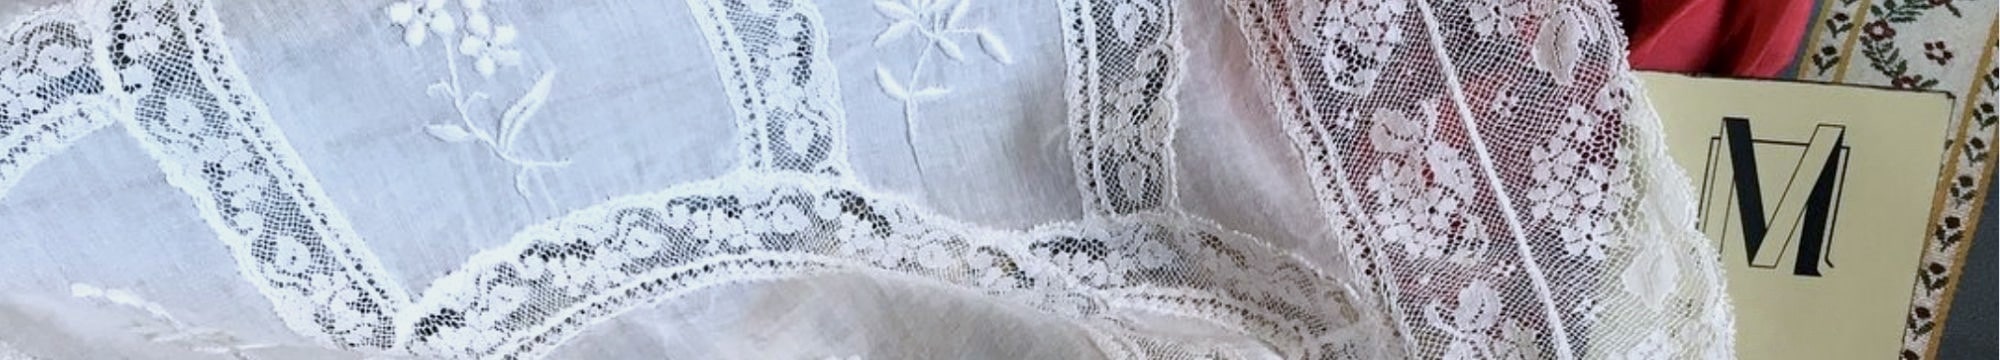 chemin-de-table-decoration-linge-ancien-lin-coton-metis-nappe-serviettes